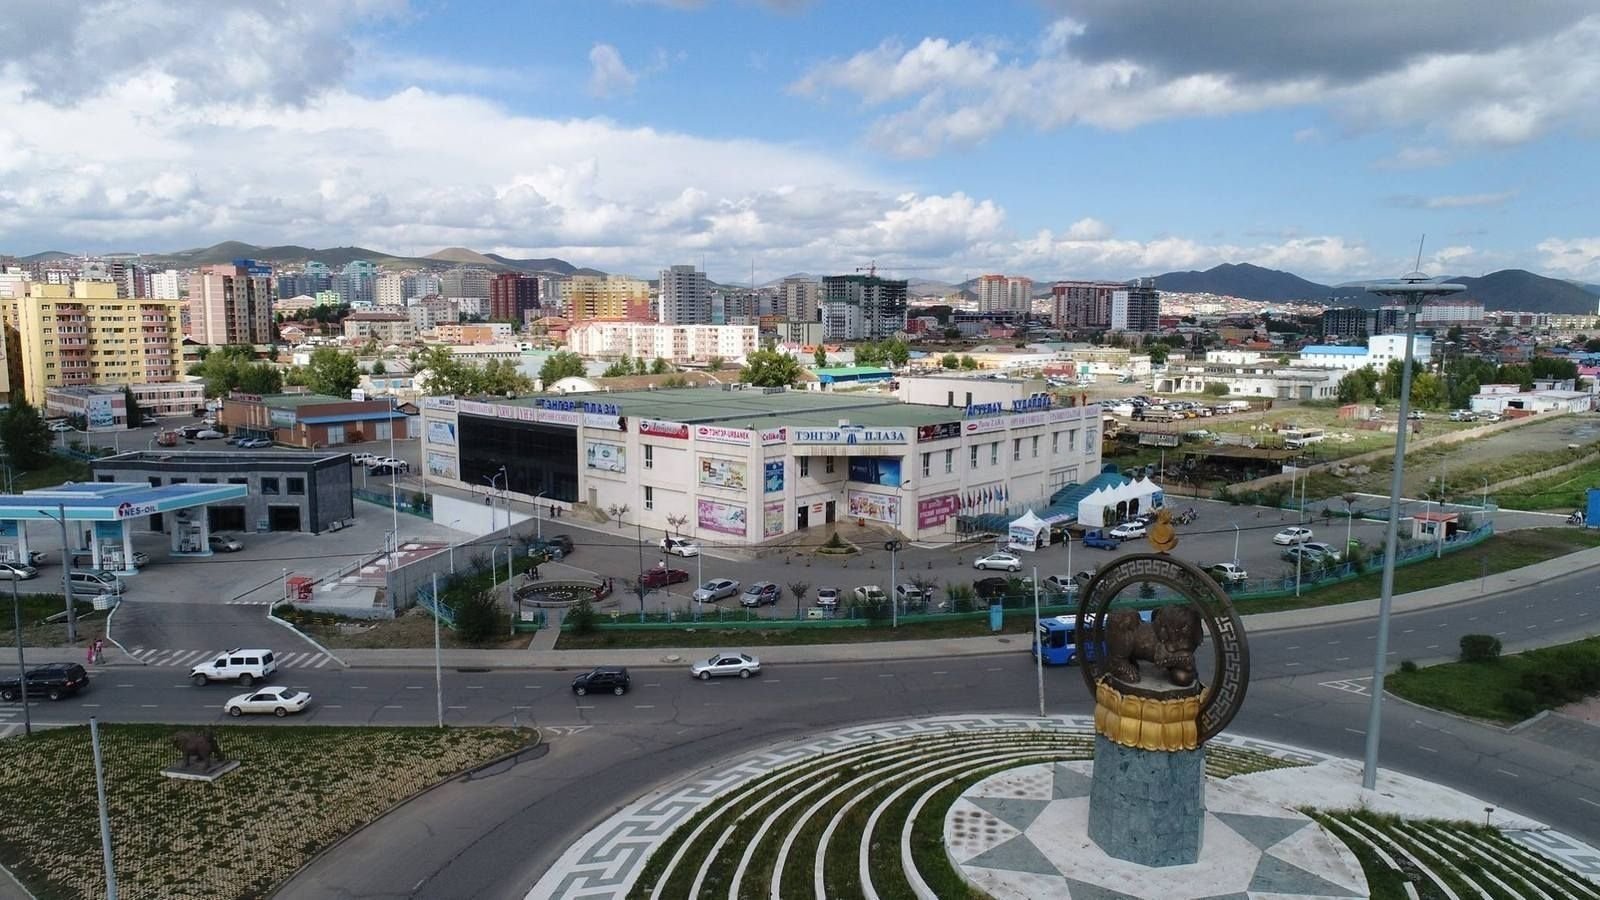 Купить в улан баторе. Монголия Улан Батор. Монголия Улан Удэ. Монголия столица Улан Батор. Улан-Удэ — Улан-Батор (Монголия).